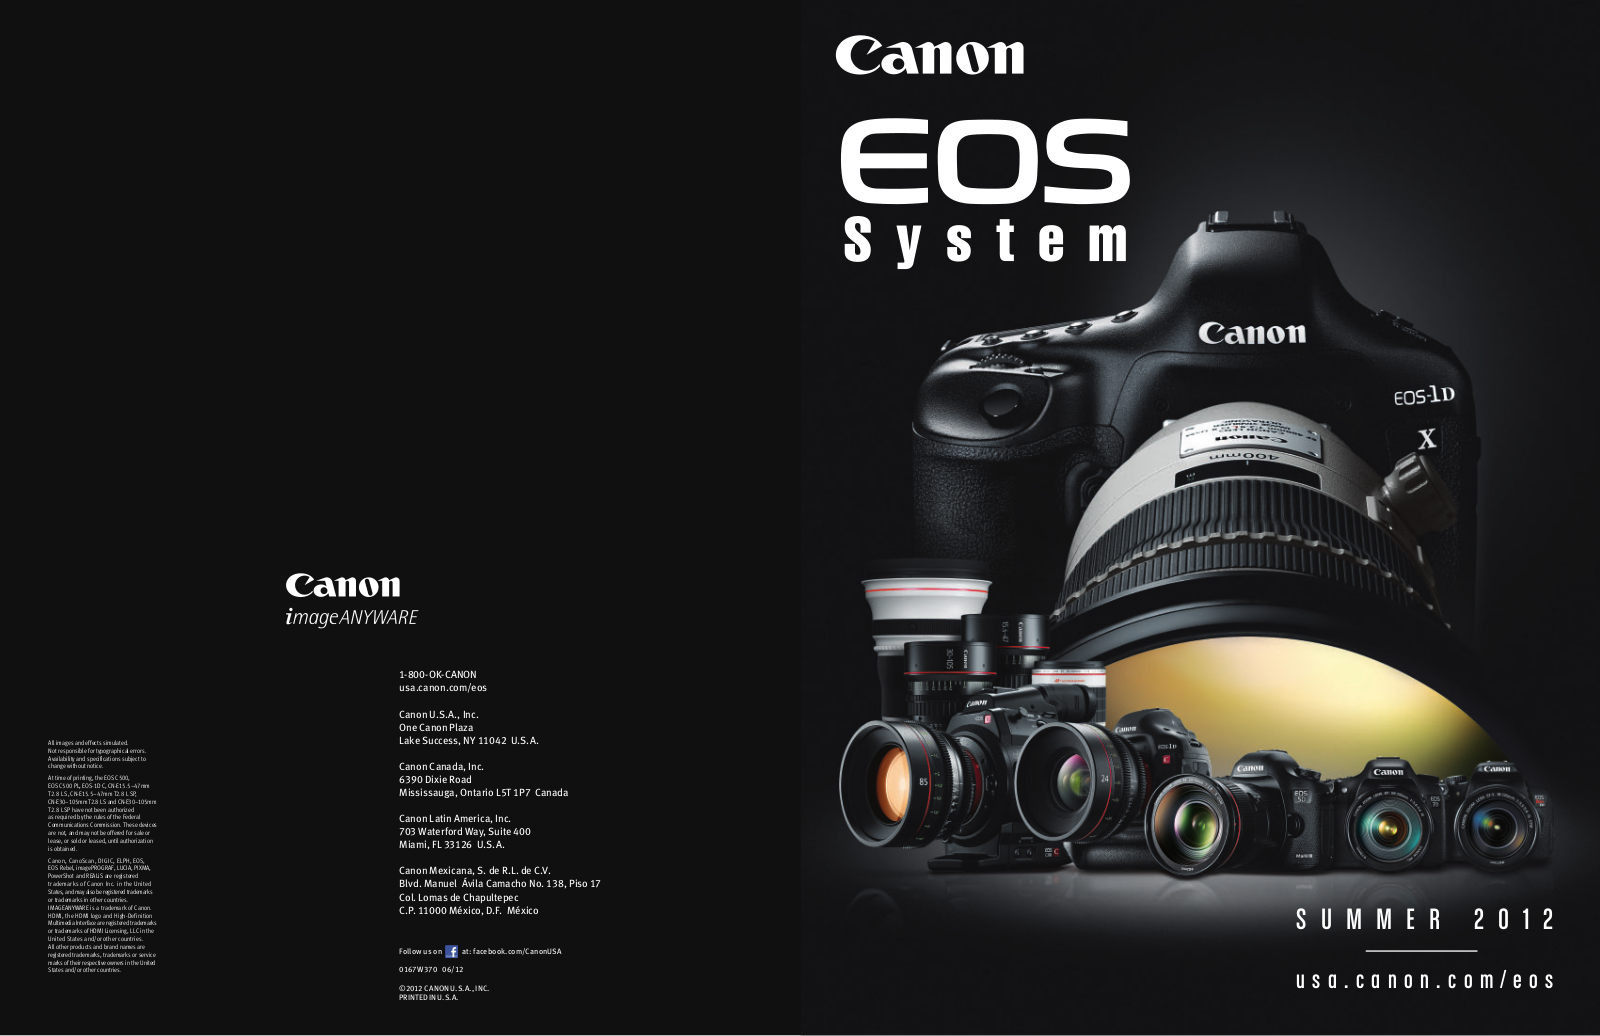 Canon EOS REBEL T3I 18-55MM IS II, EOS REBEL T3 18-55MM IS II BROCHURE